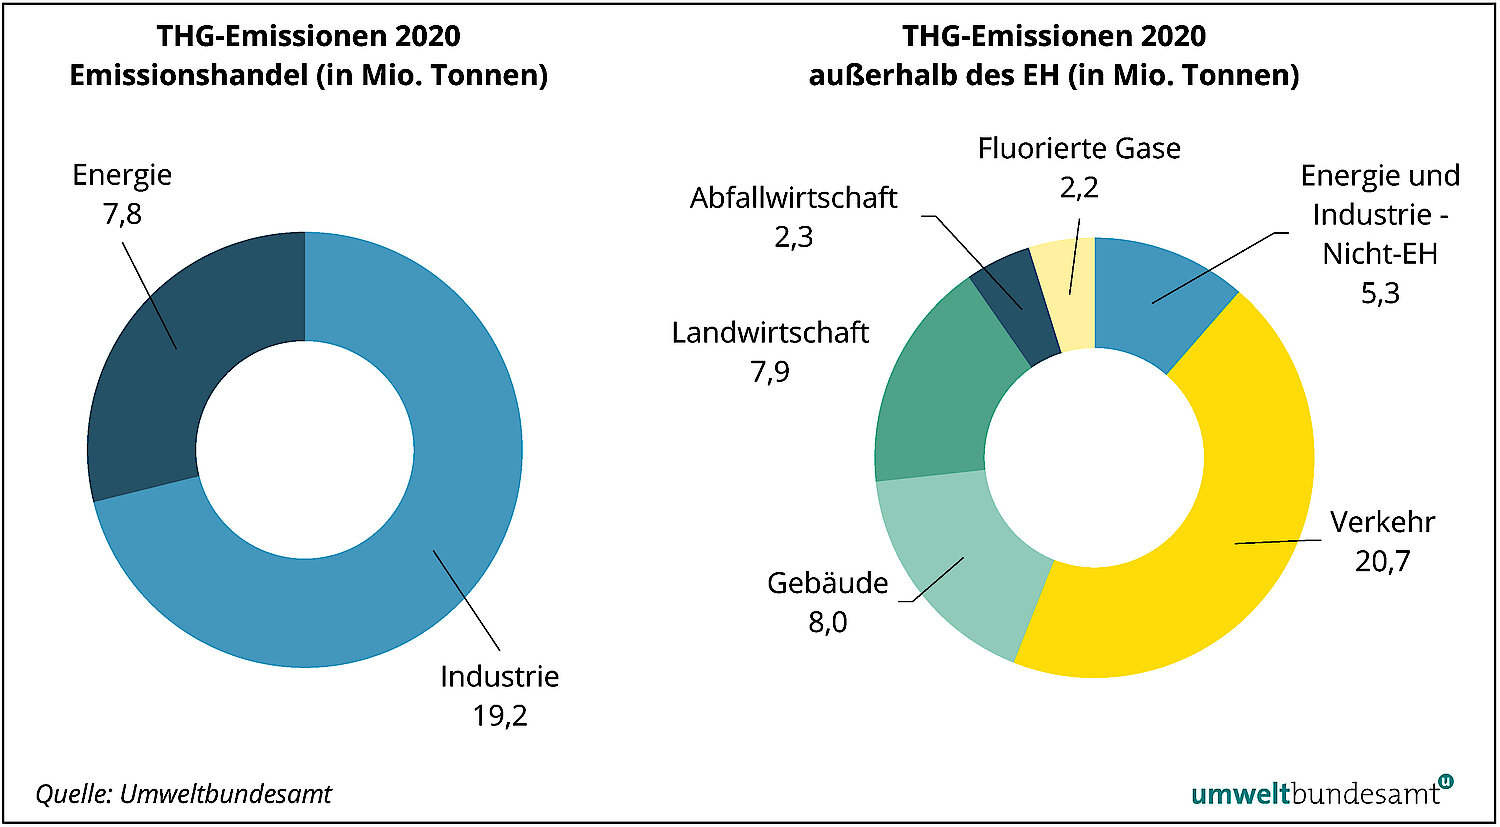 Bei den THG Emissionen 2020 durch Emissionshandel entfallen 19,2 Millionen Tonnen auf die Industrie, 7,8 Millionen Tonnen auf Energie. Außerhalb des Emissionshandels ist mit 20,7 Millionen Tonnen der größte Anteil dem Sektor Verkehr zuzurechnen.